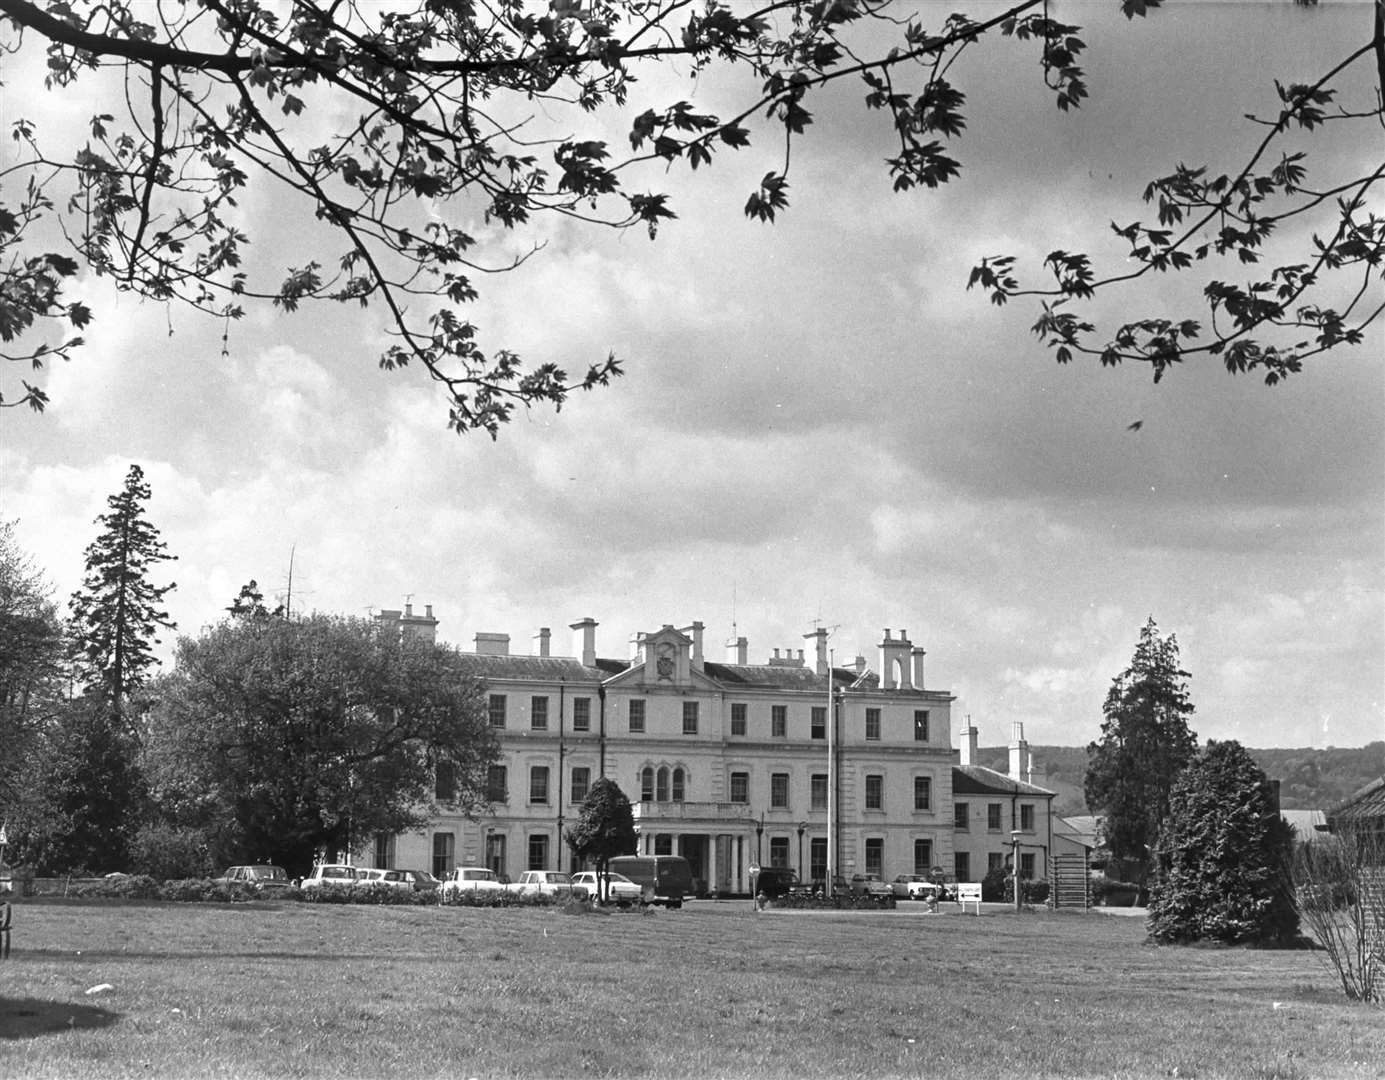 Leybourne Grange Hospital in 1973